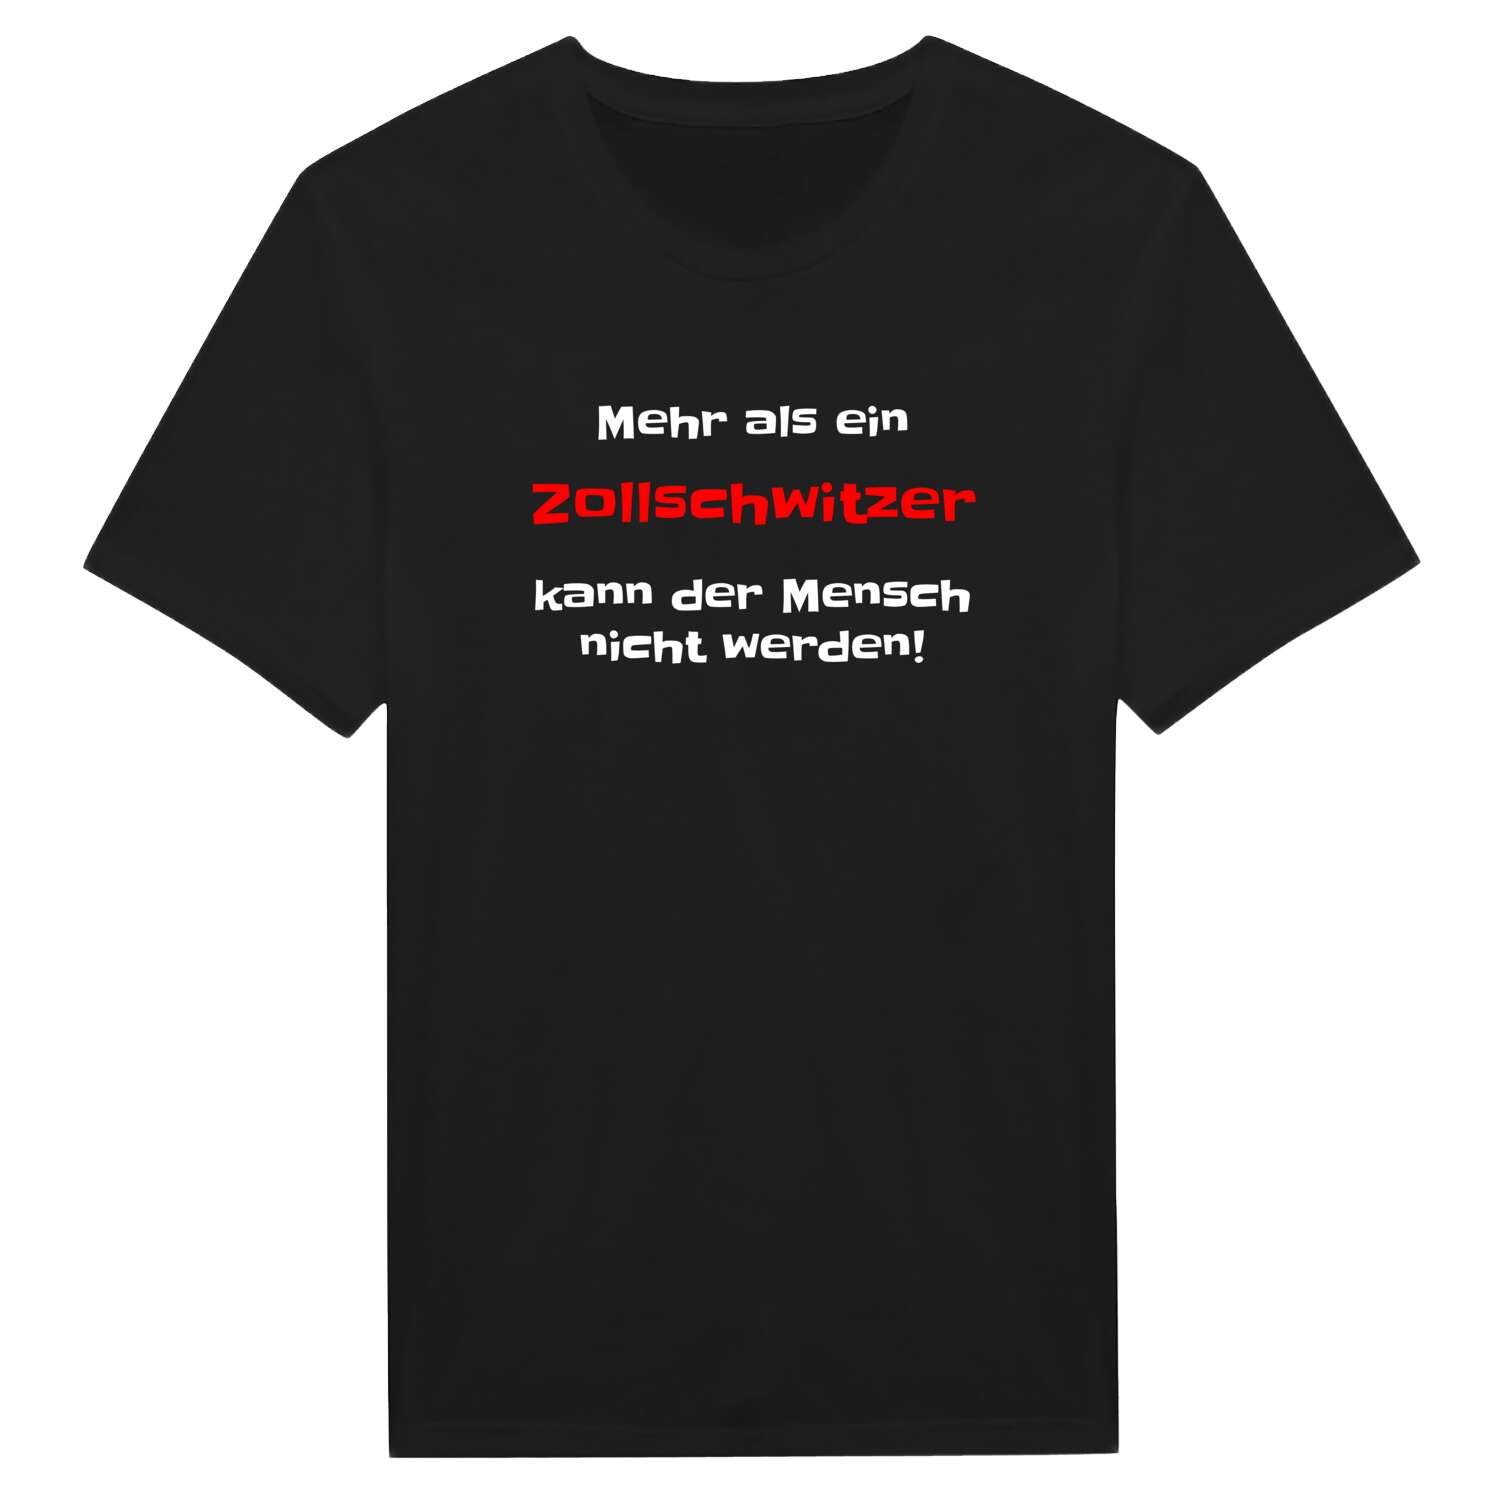 Zollschwitz T-Shirt »Mehr als ein«